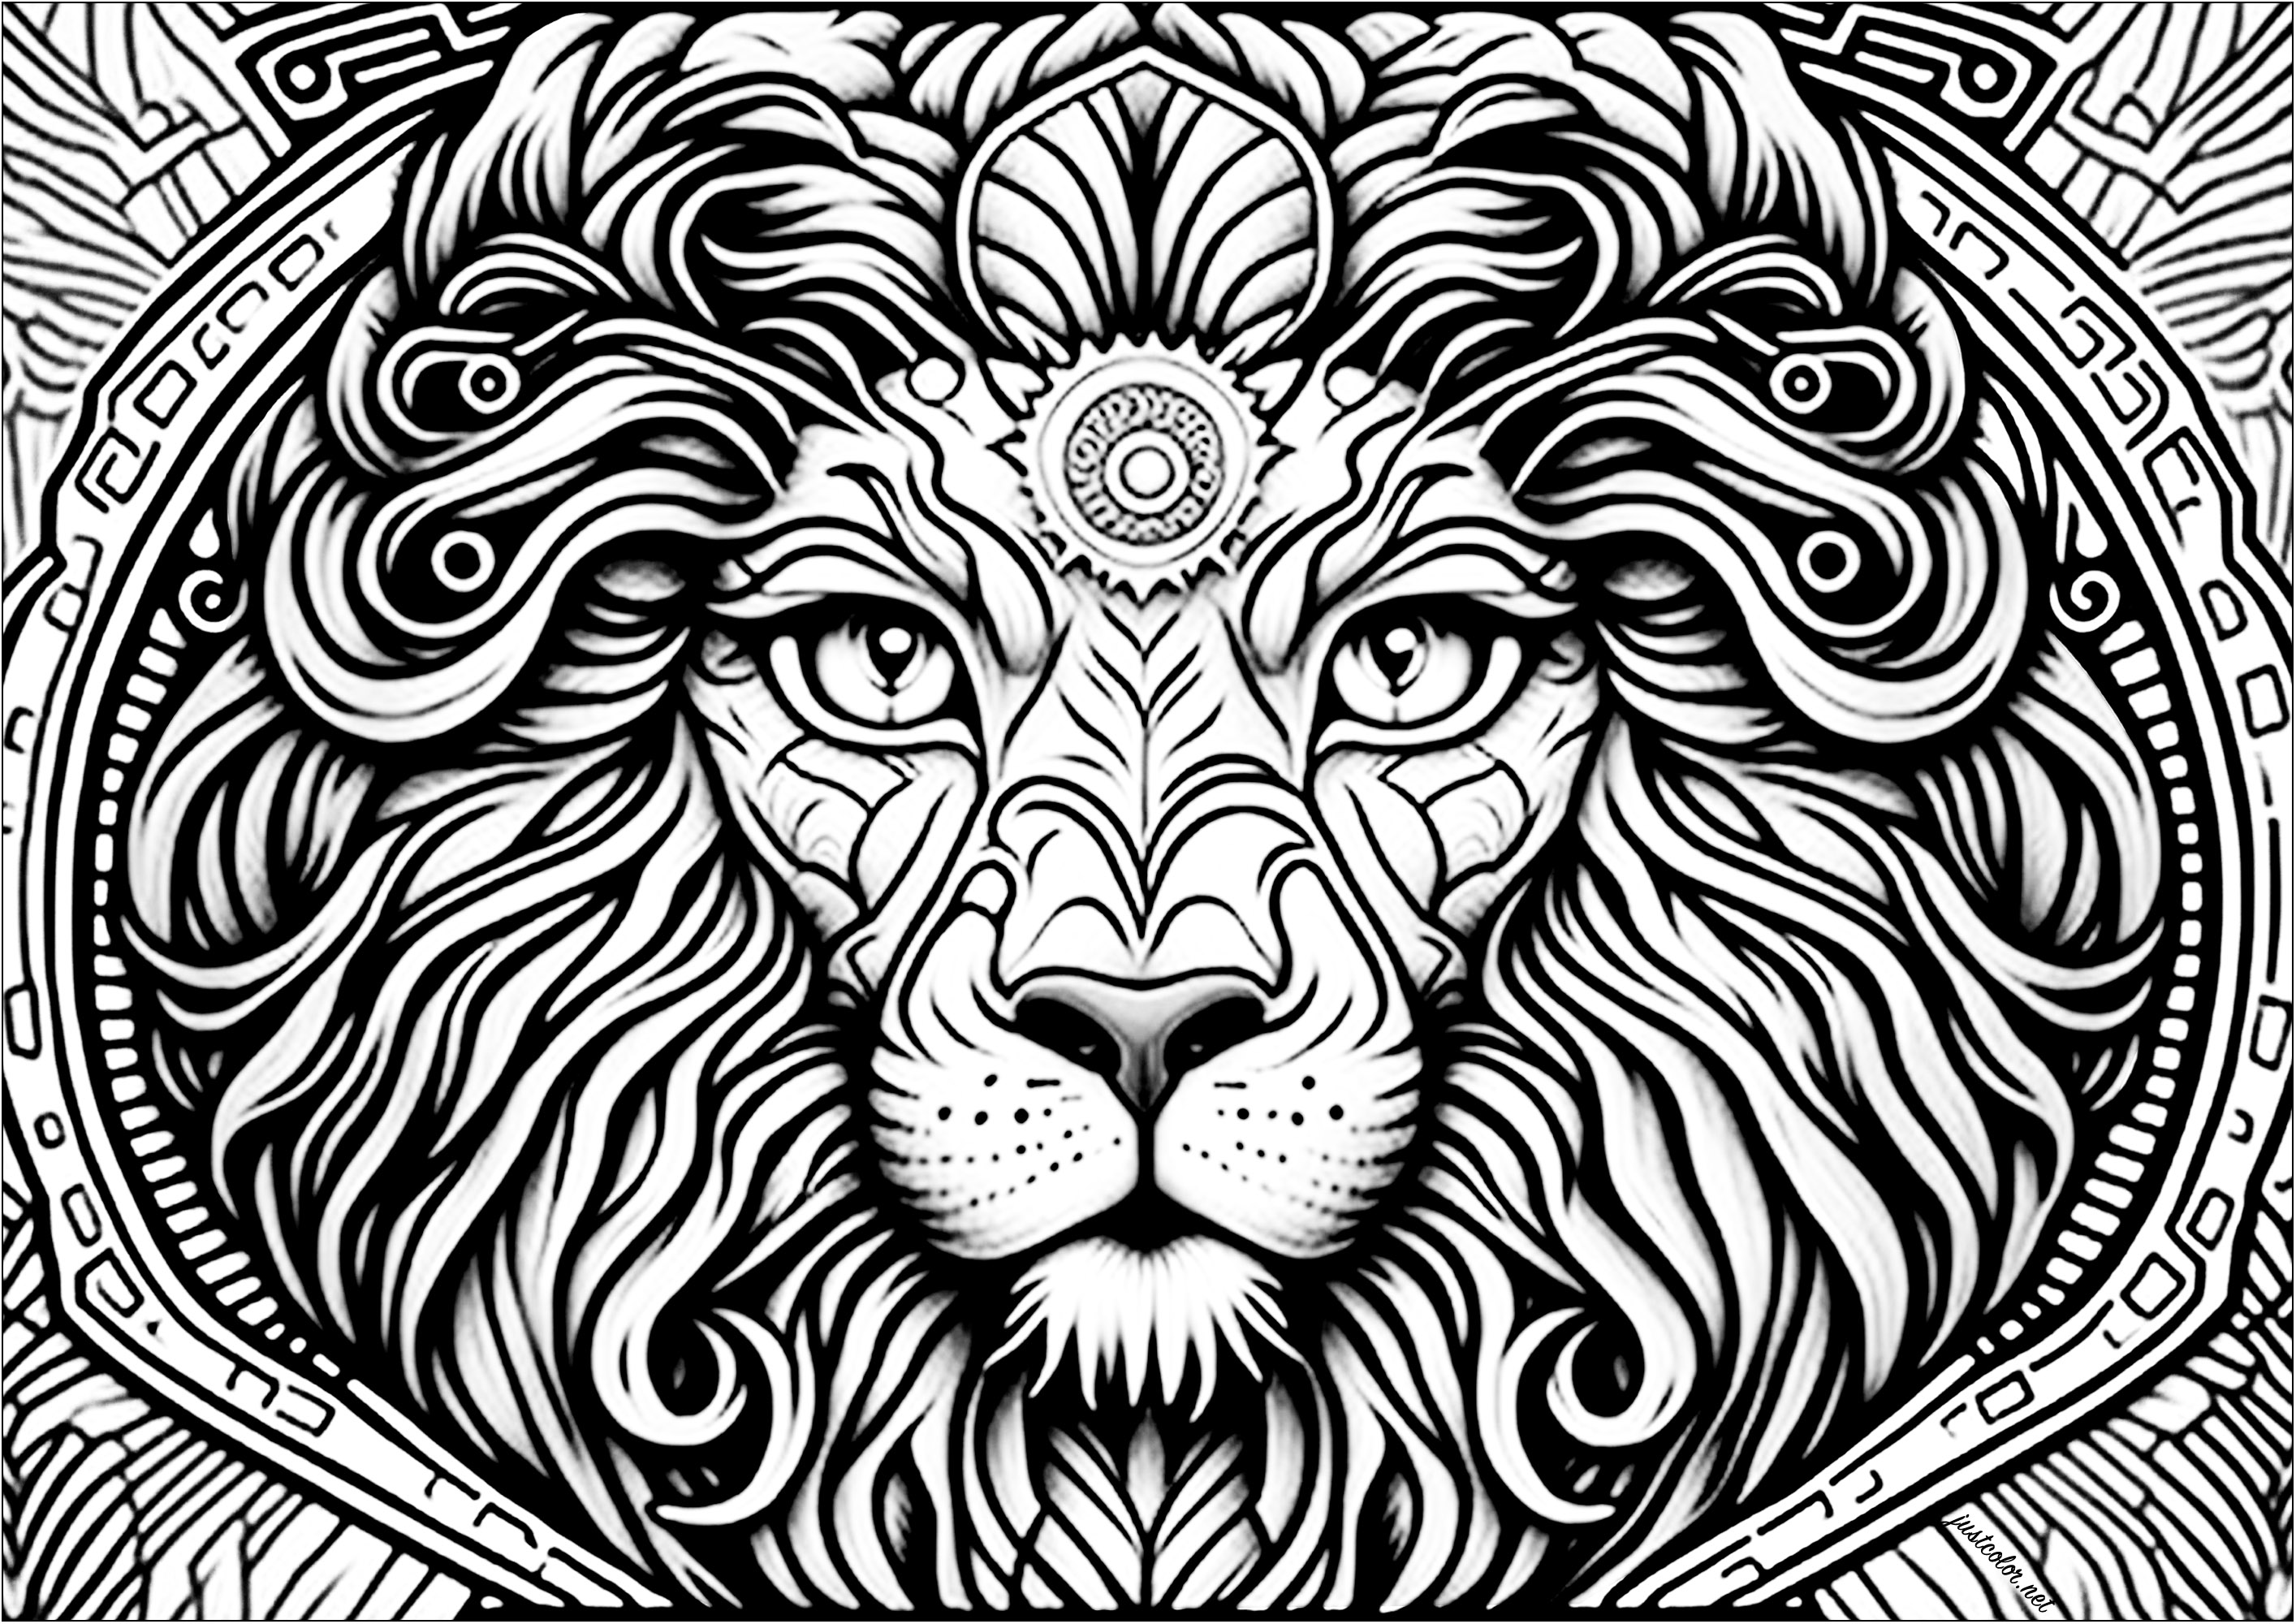 Cabeça de leão vista de frente, com muitos detalhes. Esta bela página colorida representa uma cabeça de leão vista de frente, com muitos detalhes.Os olhos estão bem abertos e o olhar é perspicaz. A crina está cheia e ondulada, e mistura-se com os detalhes abstractos do fundo.